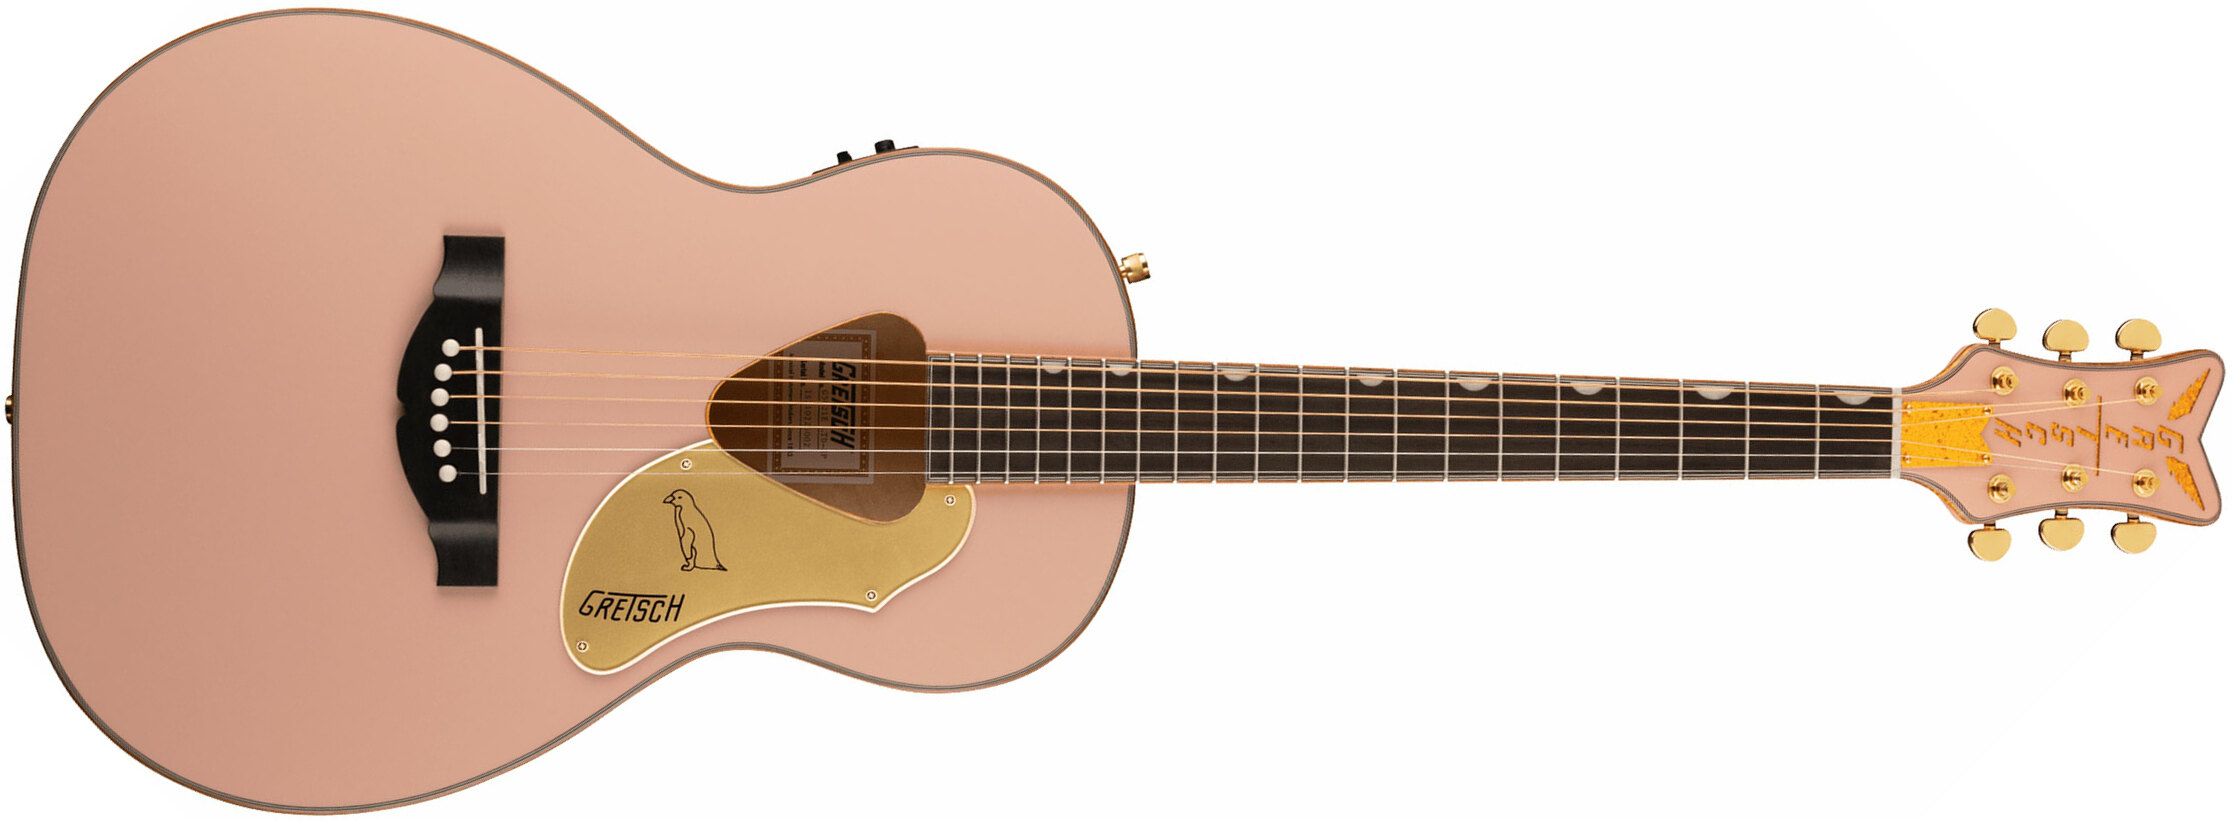 Gretsch G5021e Rancher Penguin Parlor Epicea Erable Lau - Shell Pink - Electro acoustic guitar - Main picture